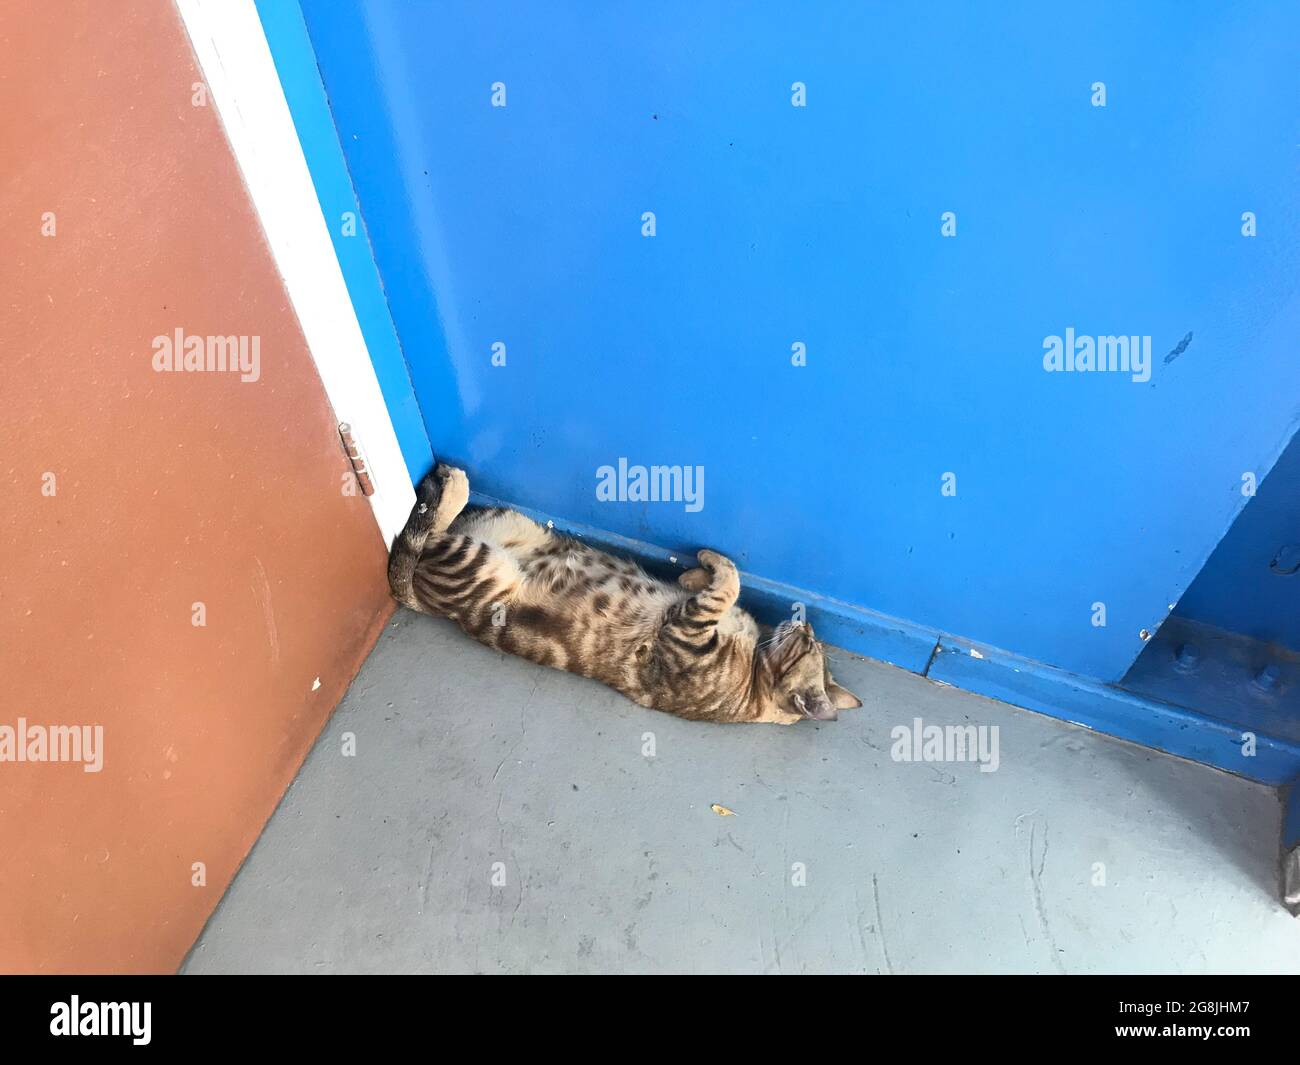 Katze schläft auf dem Kopf nach unten beugen Schlafen hinter Tür Eckseite  kann gequetscht werden Stockfotografie - Alamy